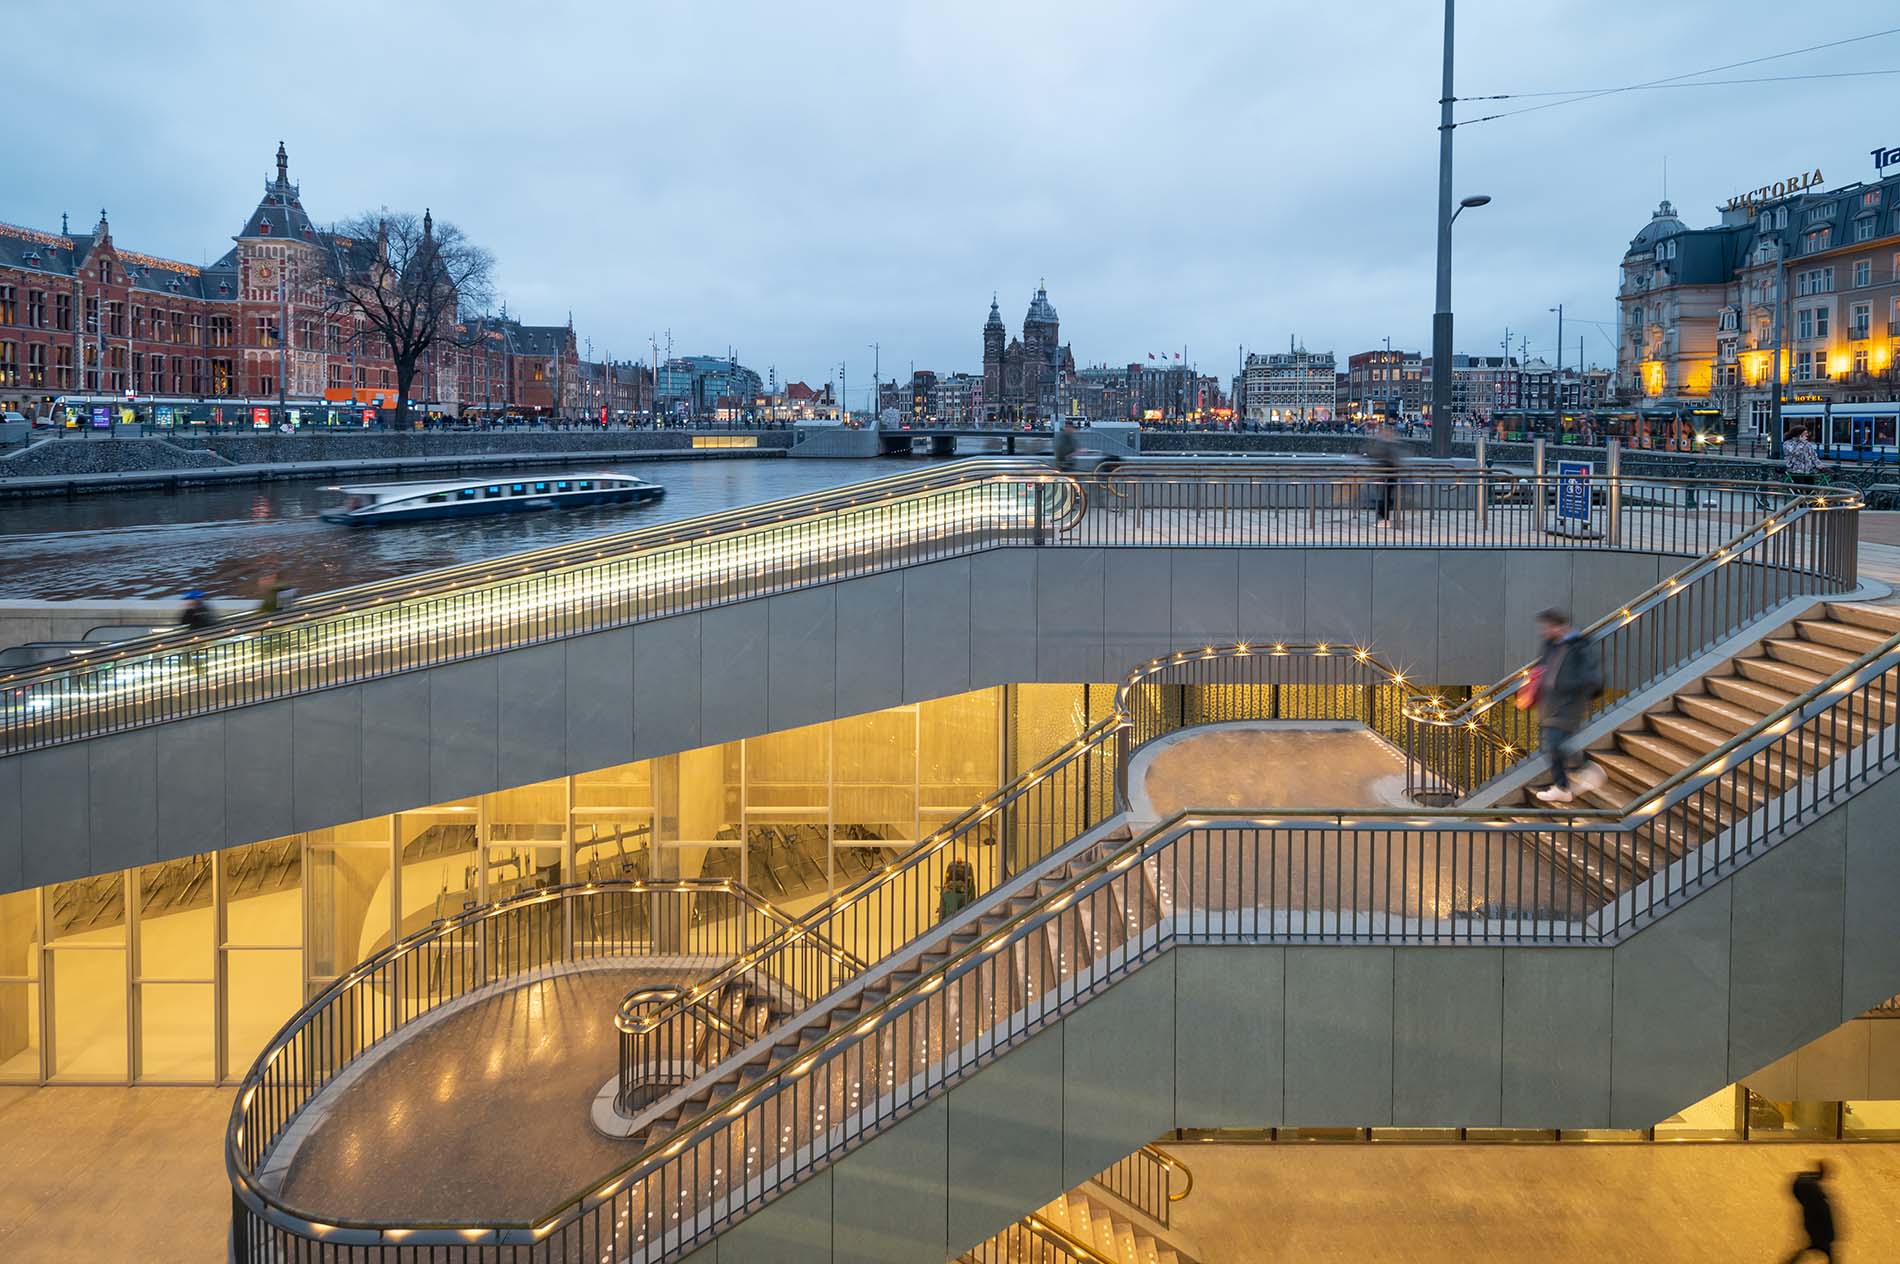 Inauguran un nuevo parking de bicicletas subterráneo en Holanda  Las  constantes lluvias y el viento hacen que el mantenimiento de las bicicletas  se vea muy perjudicado. Por eso cada vez son